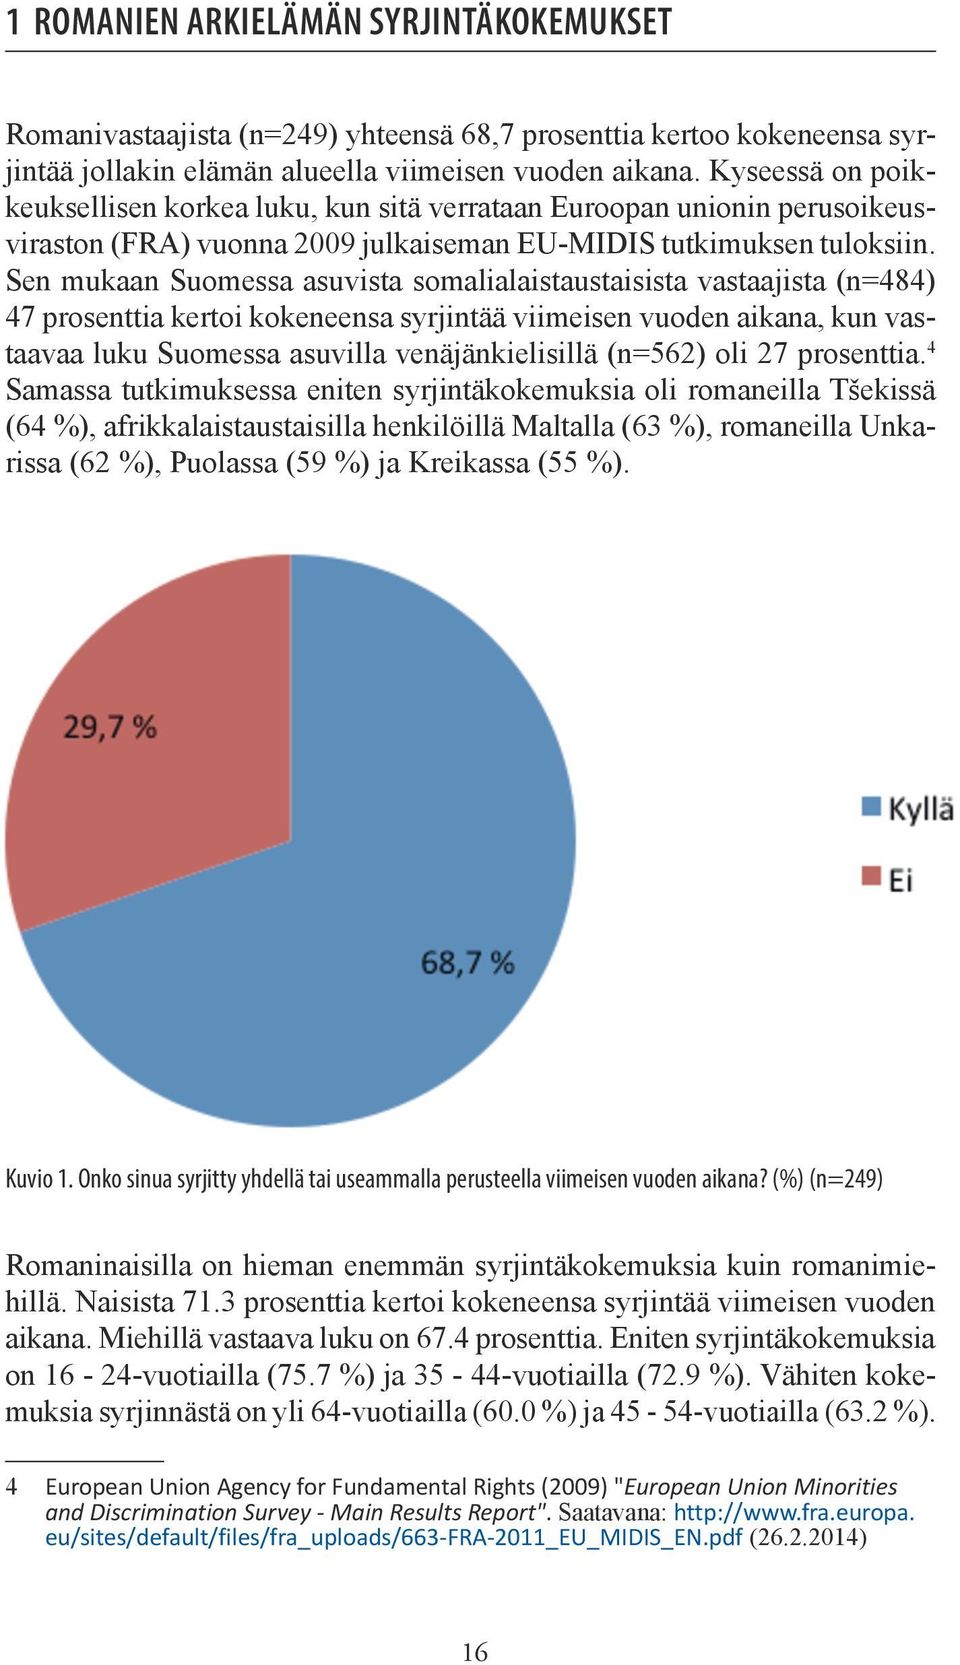 Sen mukaan Suomessa asuvista somalialaistaustaisista vastaajista (n=484) 47 prosenttia kertoi kokeneensa syrjintää viimeisen vuoden aikana, kun vastaavaa luku Suomessa asuvilla venäjänkielisillä